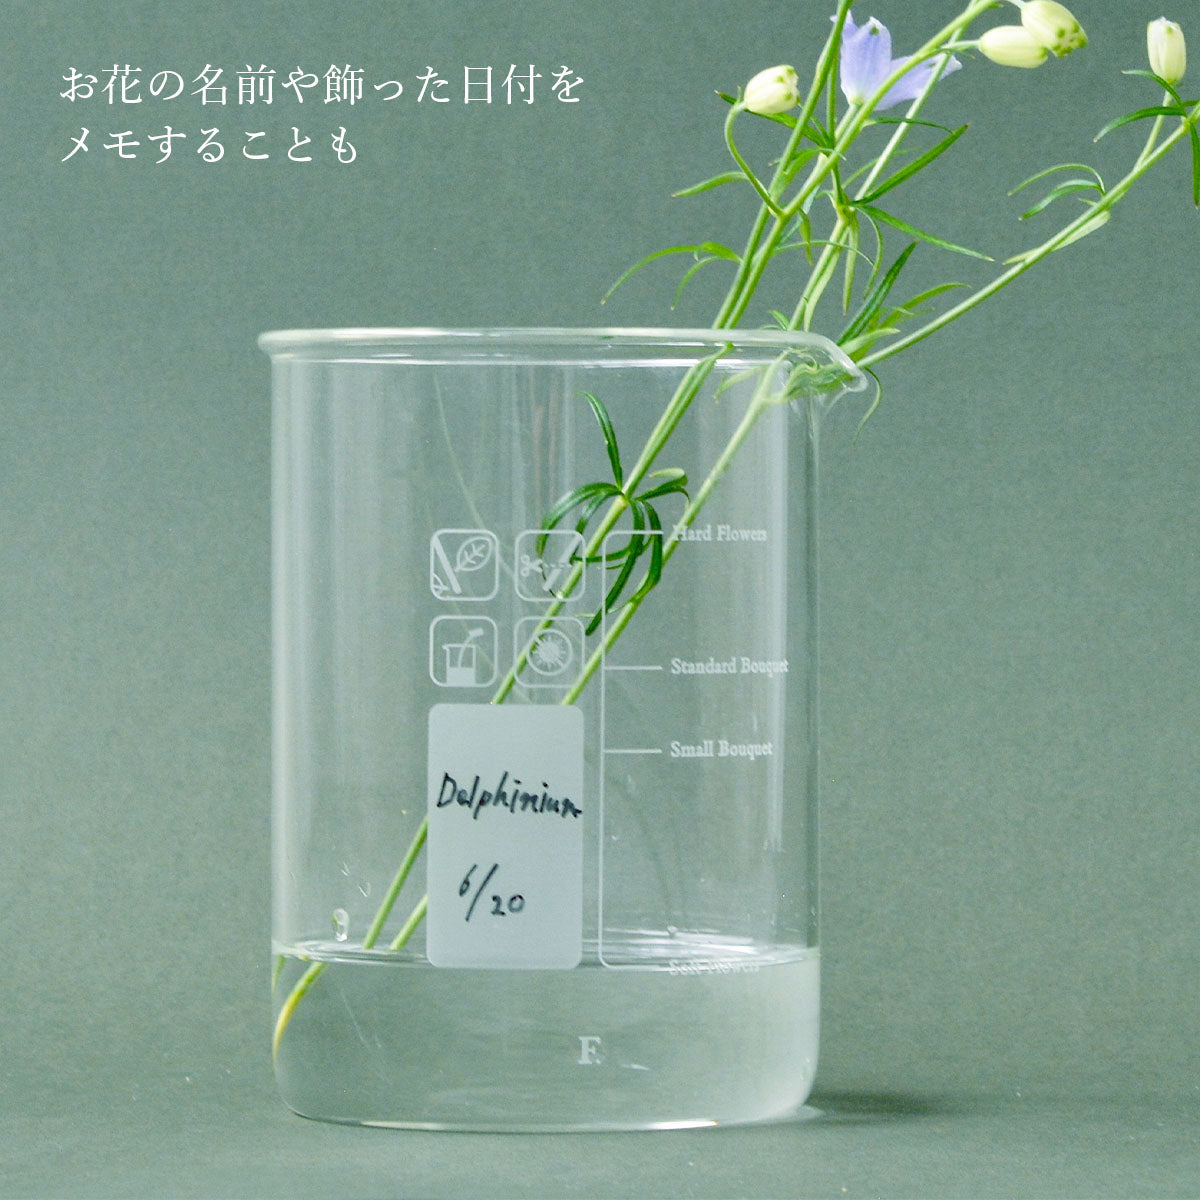 F. [éf] Beaker Vase